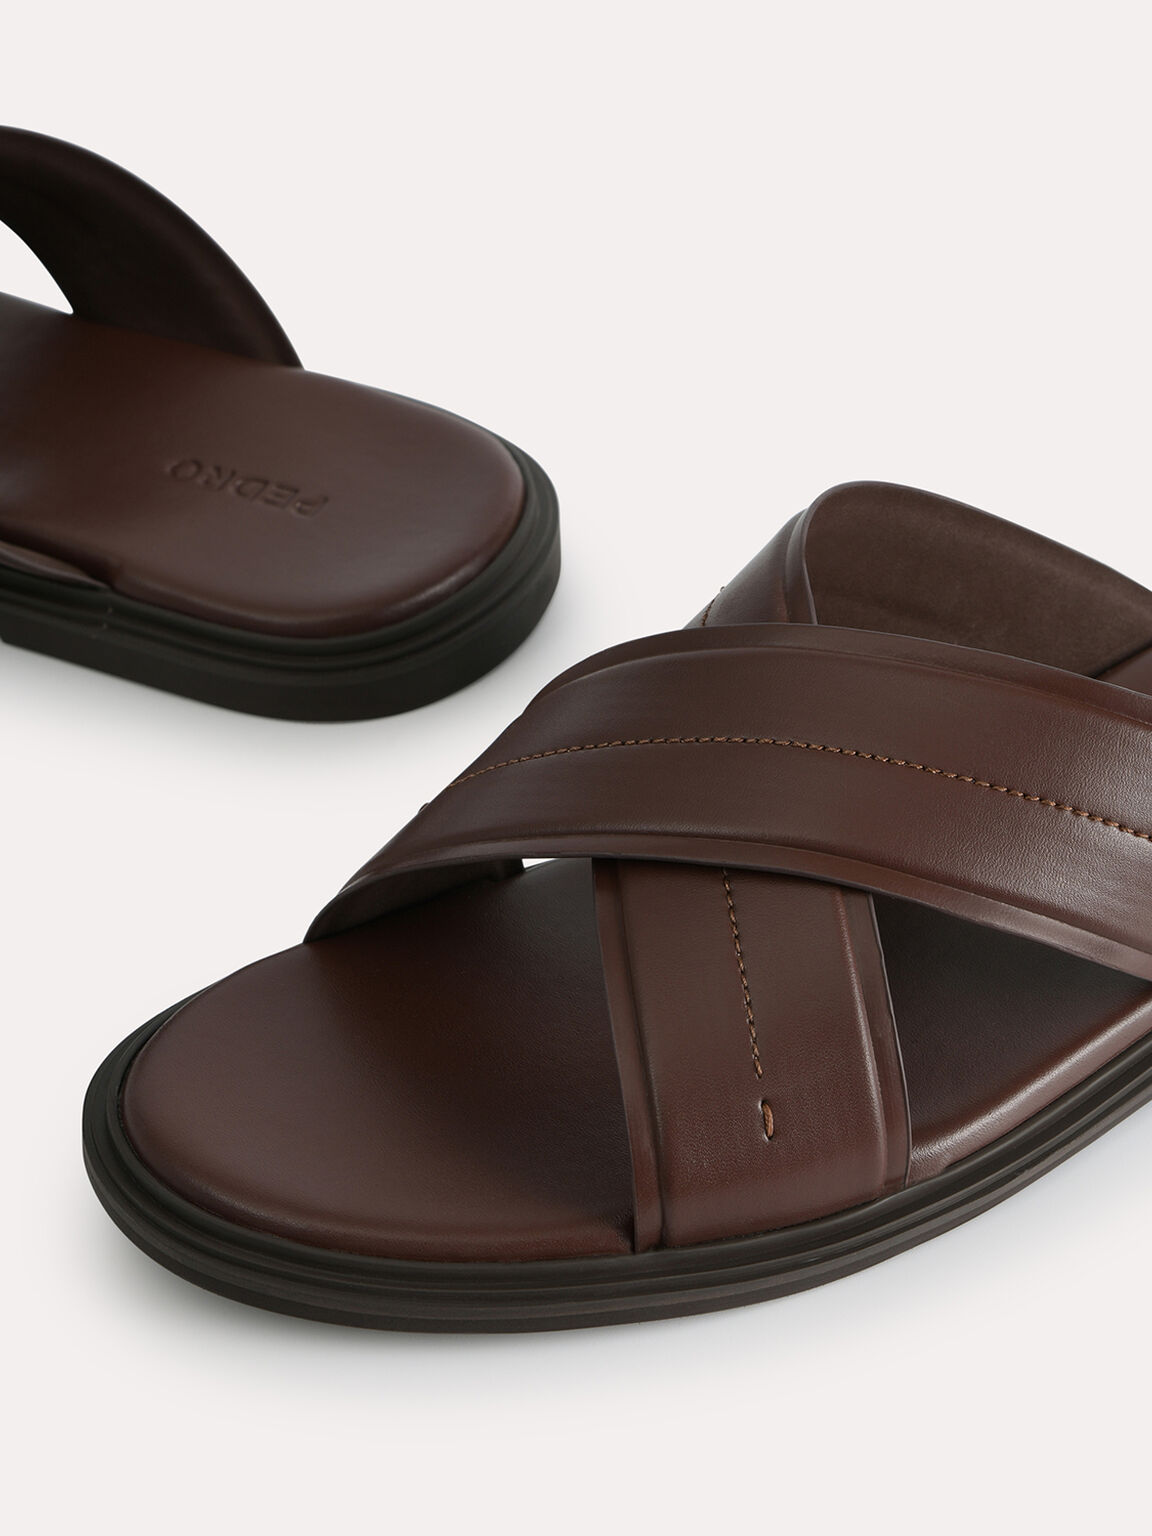 Criss-Cross Sandals, Brown